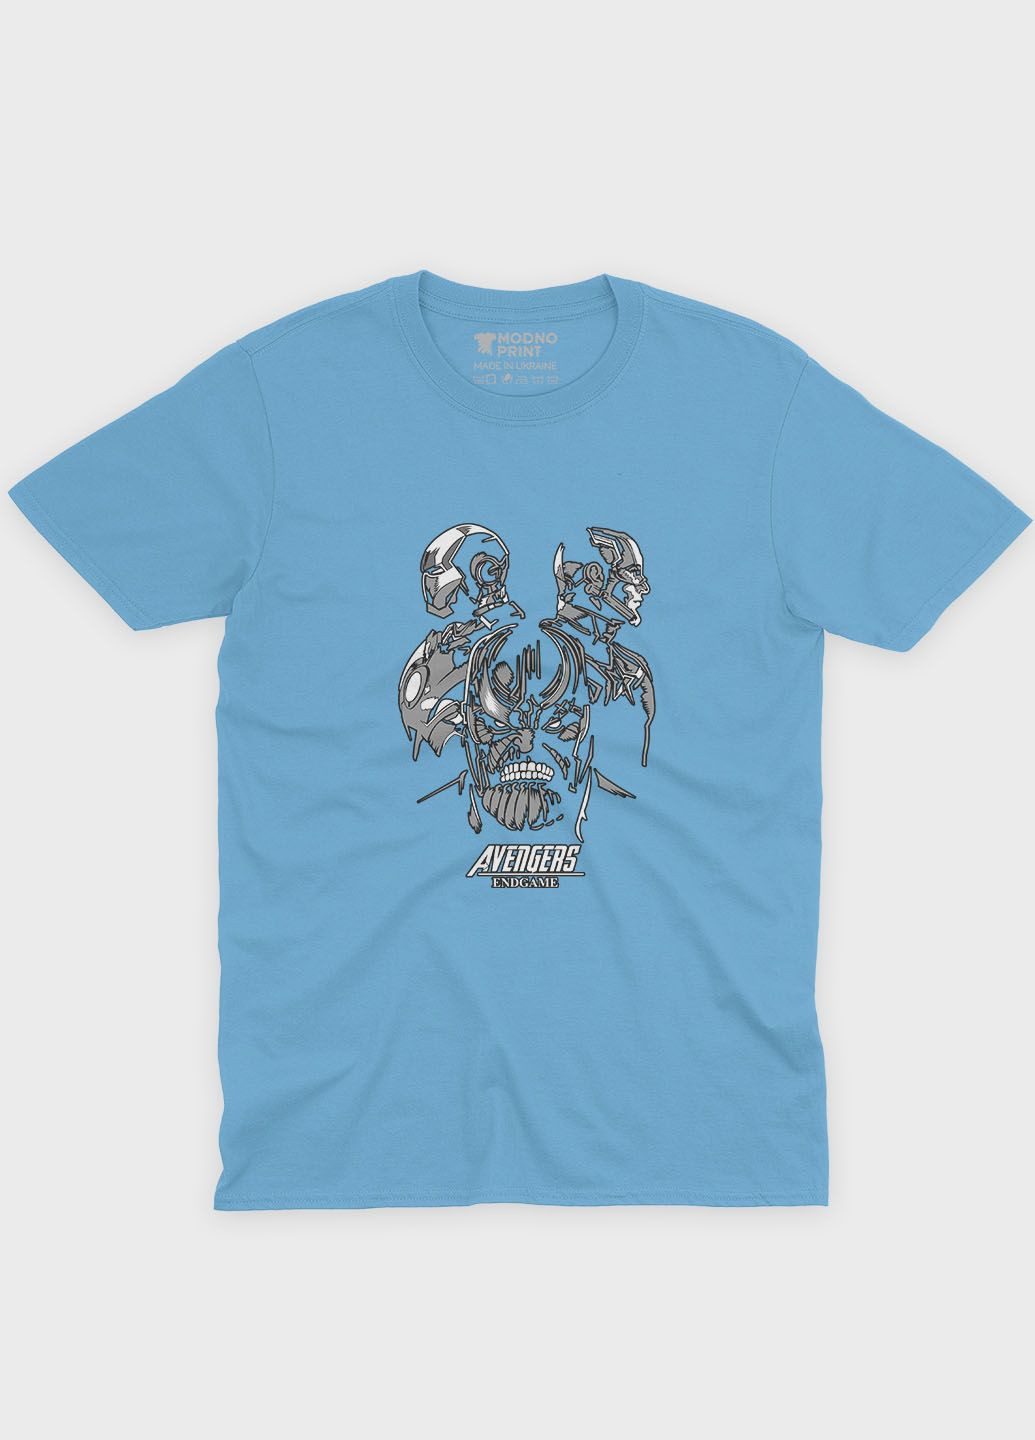 Голубая демисезонная футболка для девочки с принтом супезлоды - танос (ts001-1-lbl-006-019-013-g) Modno